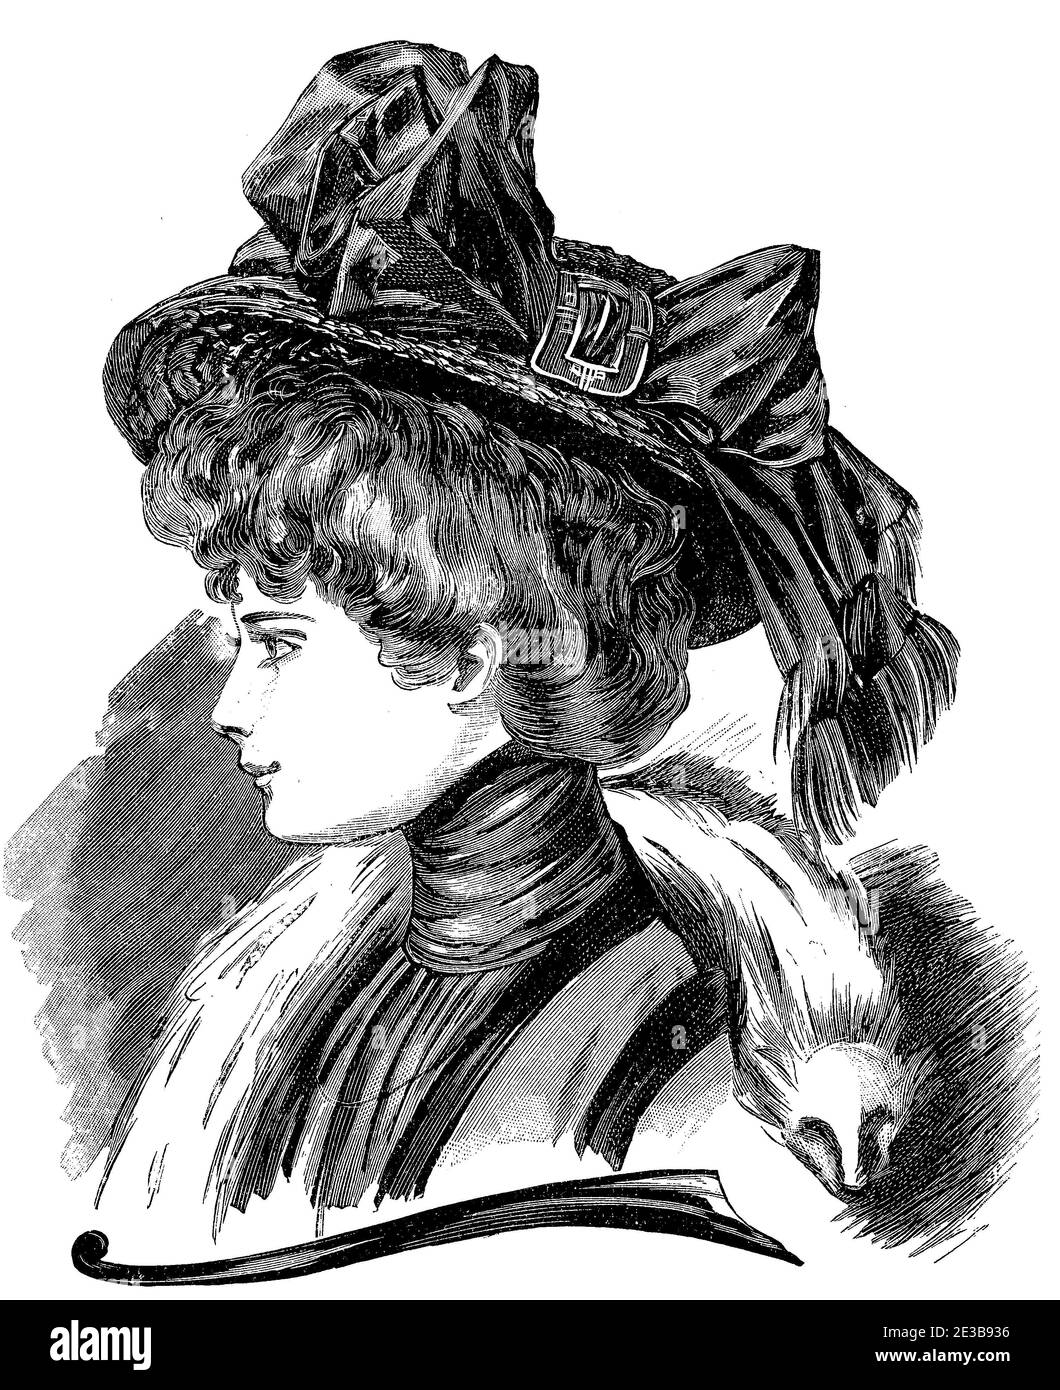 Cappello da donna e parrucchiere moda 1907, cappelli larghi con arco, pettinatura Gibson girl con peli impilati, blusa in chiffon e stola bianca in volpe Foto Stock